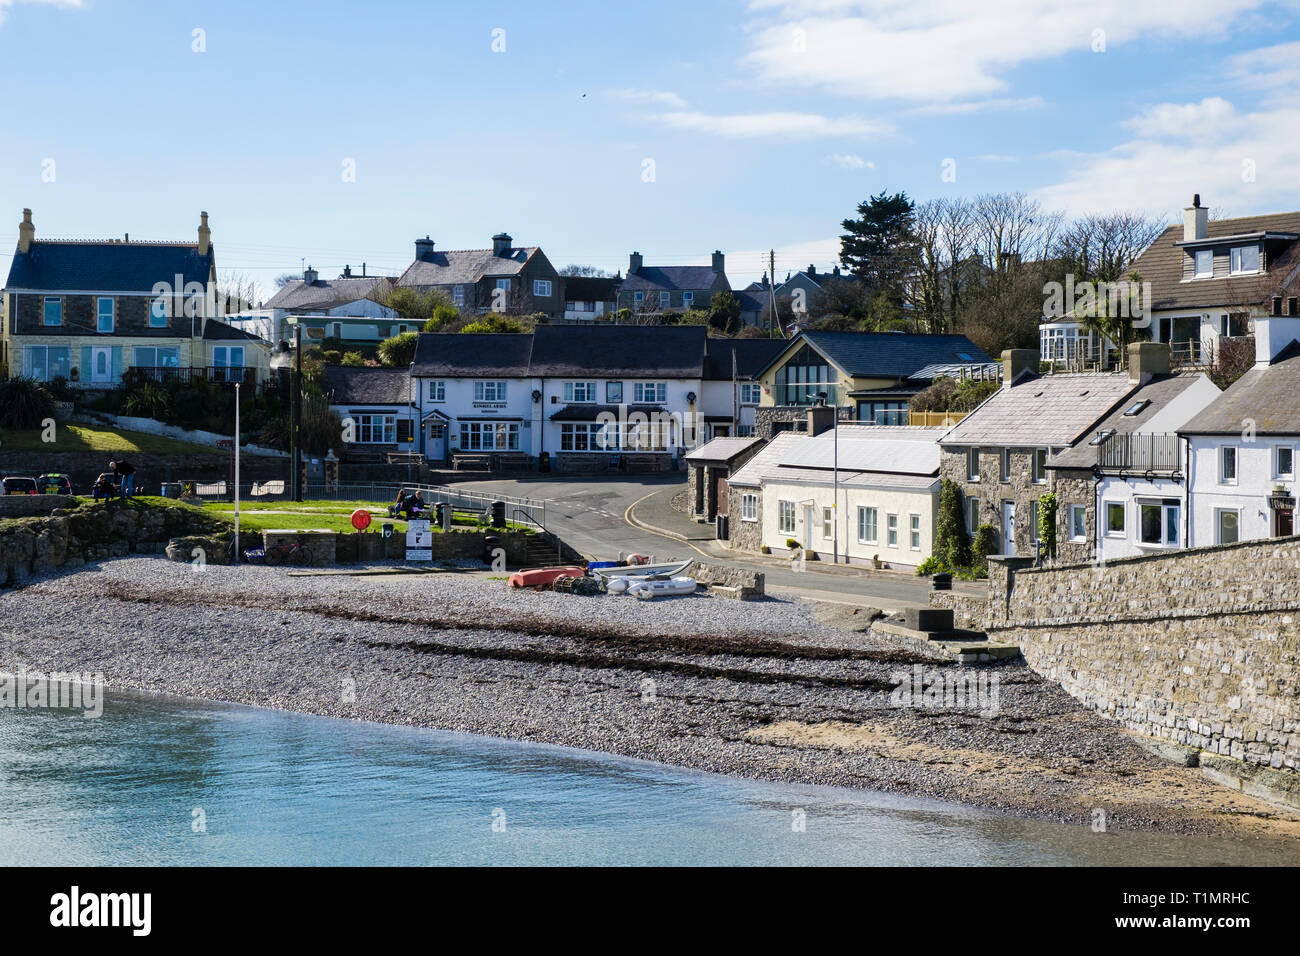 Vue sur plage de cottages et de pub sur le bord de mer en village de Llangefni, Ile d'Anglesey, au Pays de Galles, Royaume-Uni, Angleterre Banque D'Images